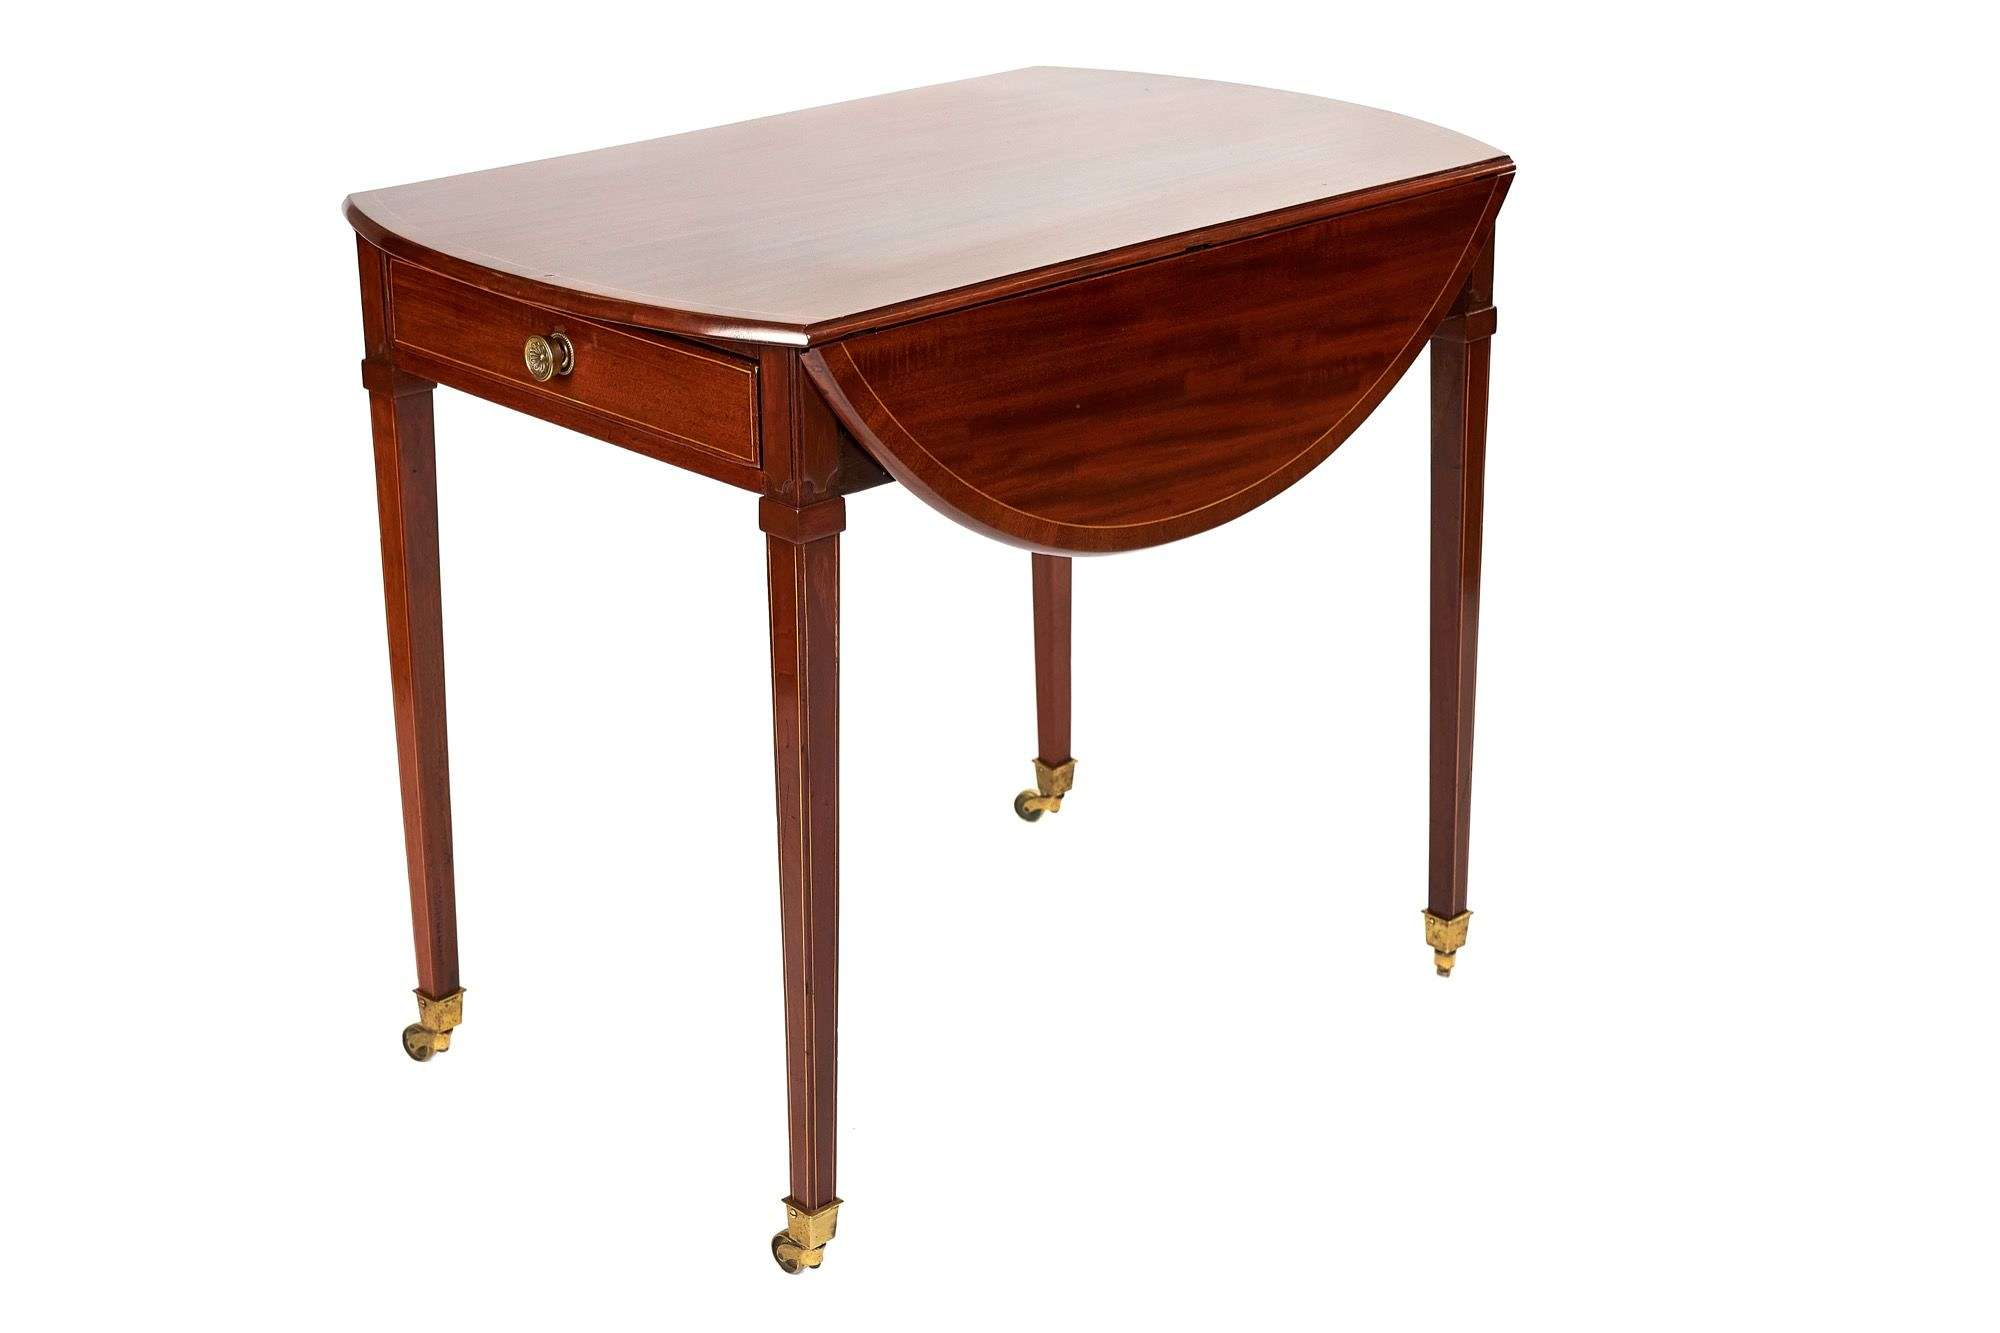 Sheraton style mahogany inlaid Pembroke table